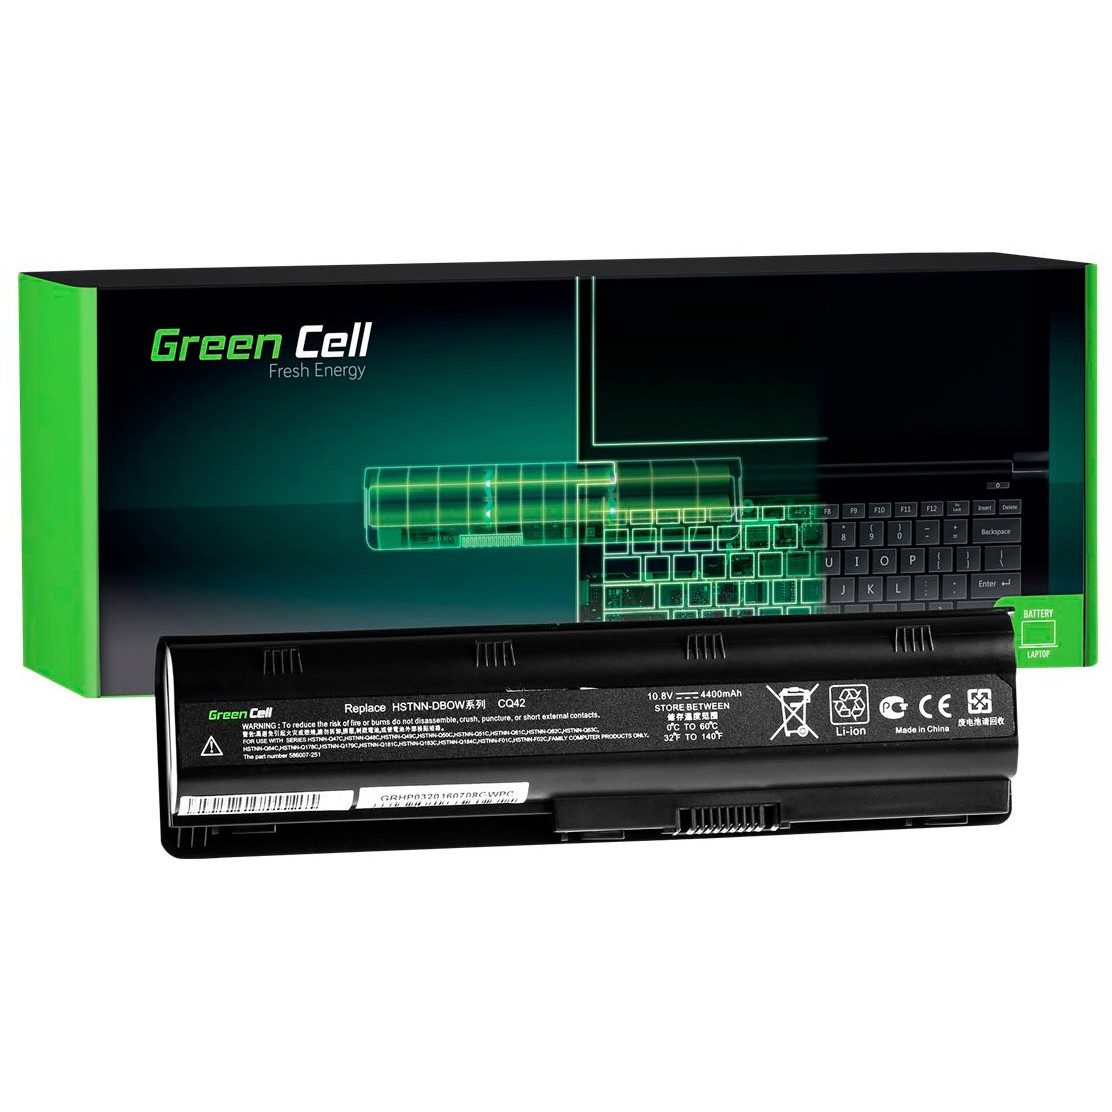 GREEN CELL Laptop Battery for HP 635 650 655 2000 Pavilion G6 G7 - 11.1V - 4400mAh